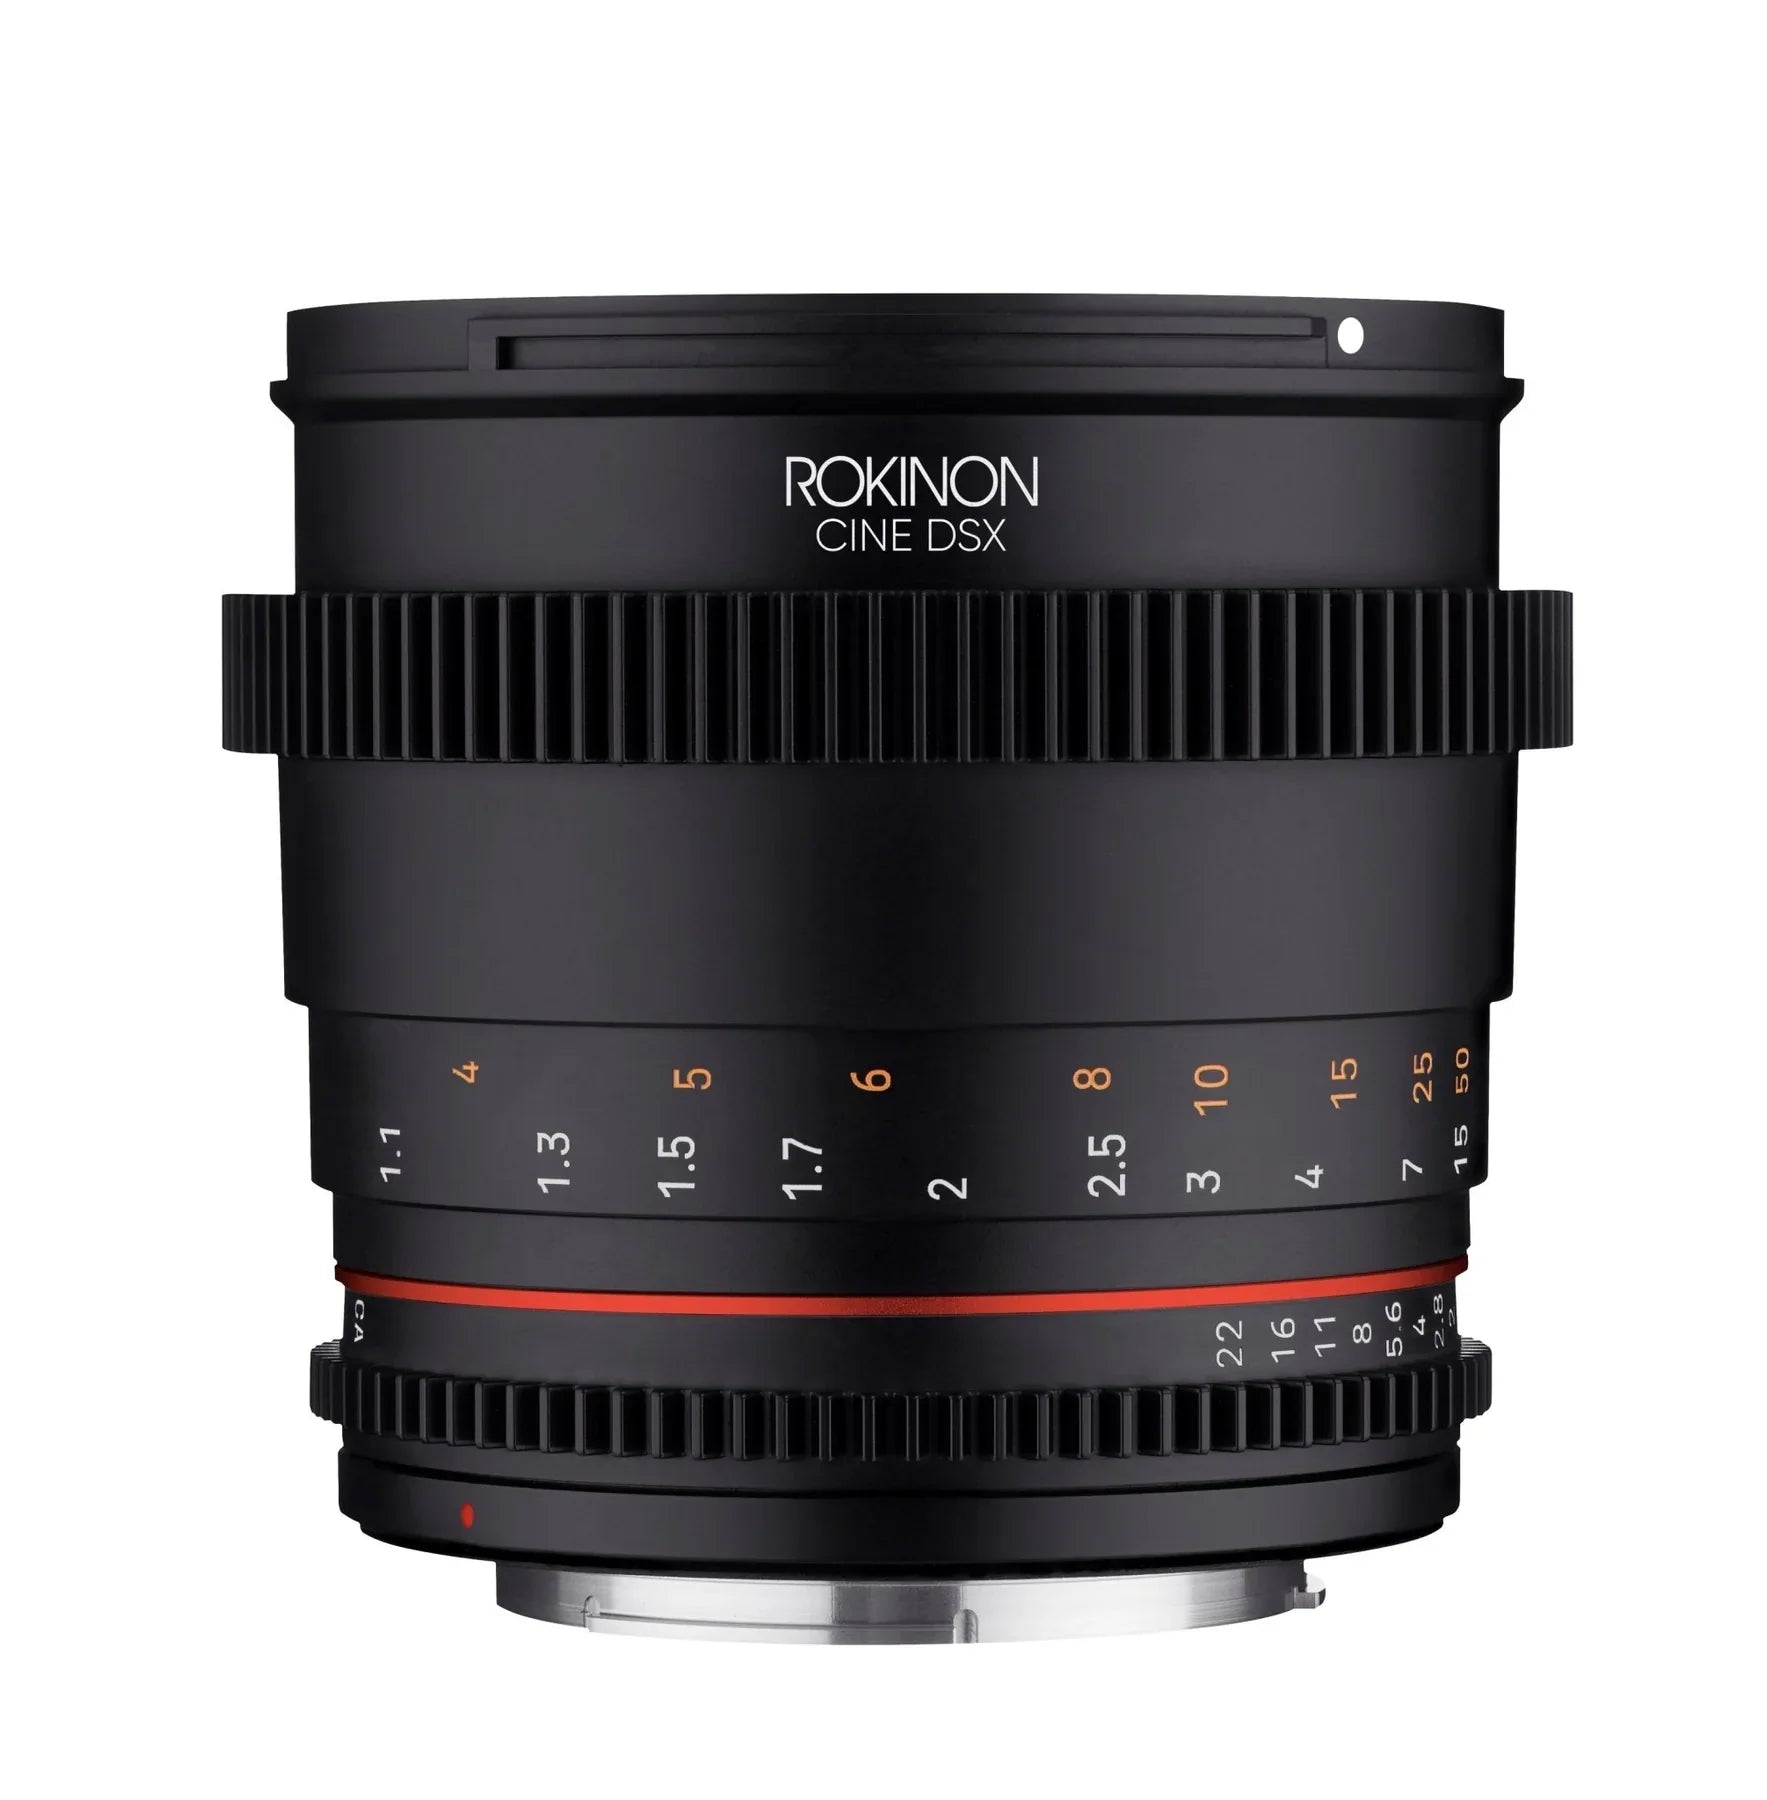 Rokinon 85mm T1.5 Full Frame Telephoto Cine DSX Lens | Filter Size 72mm - Canon RF Lens Mount Camera tek